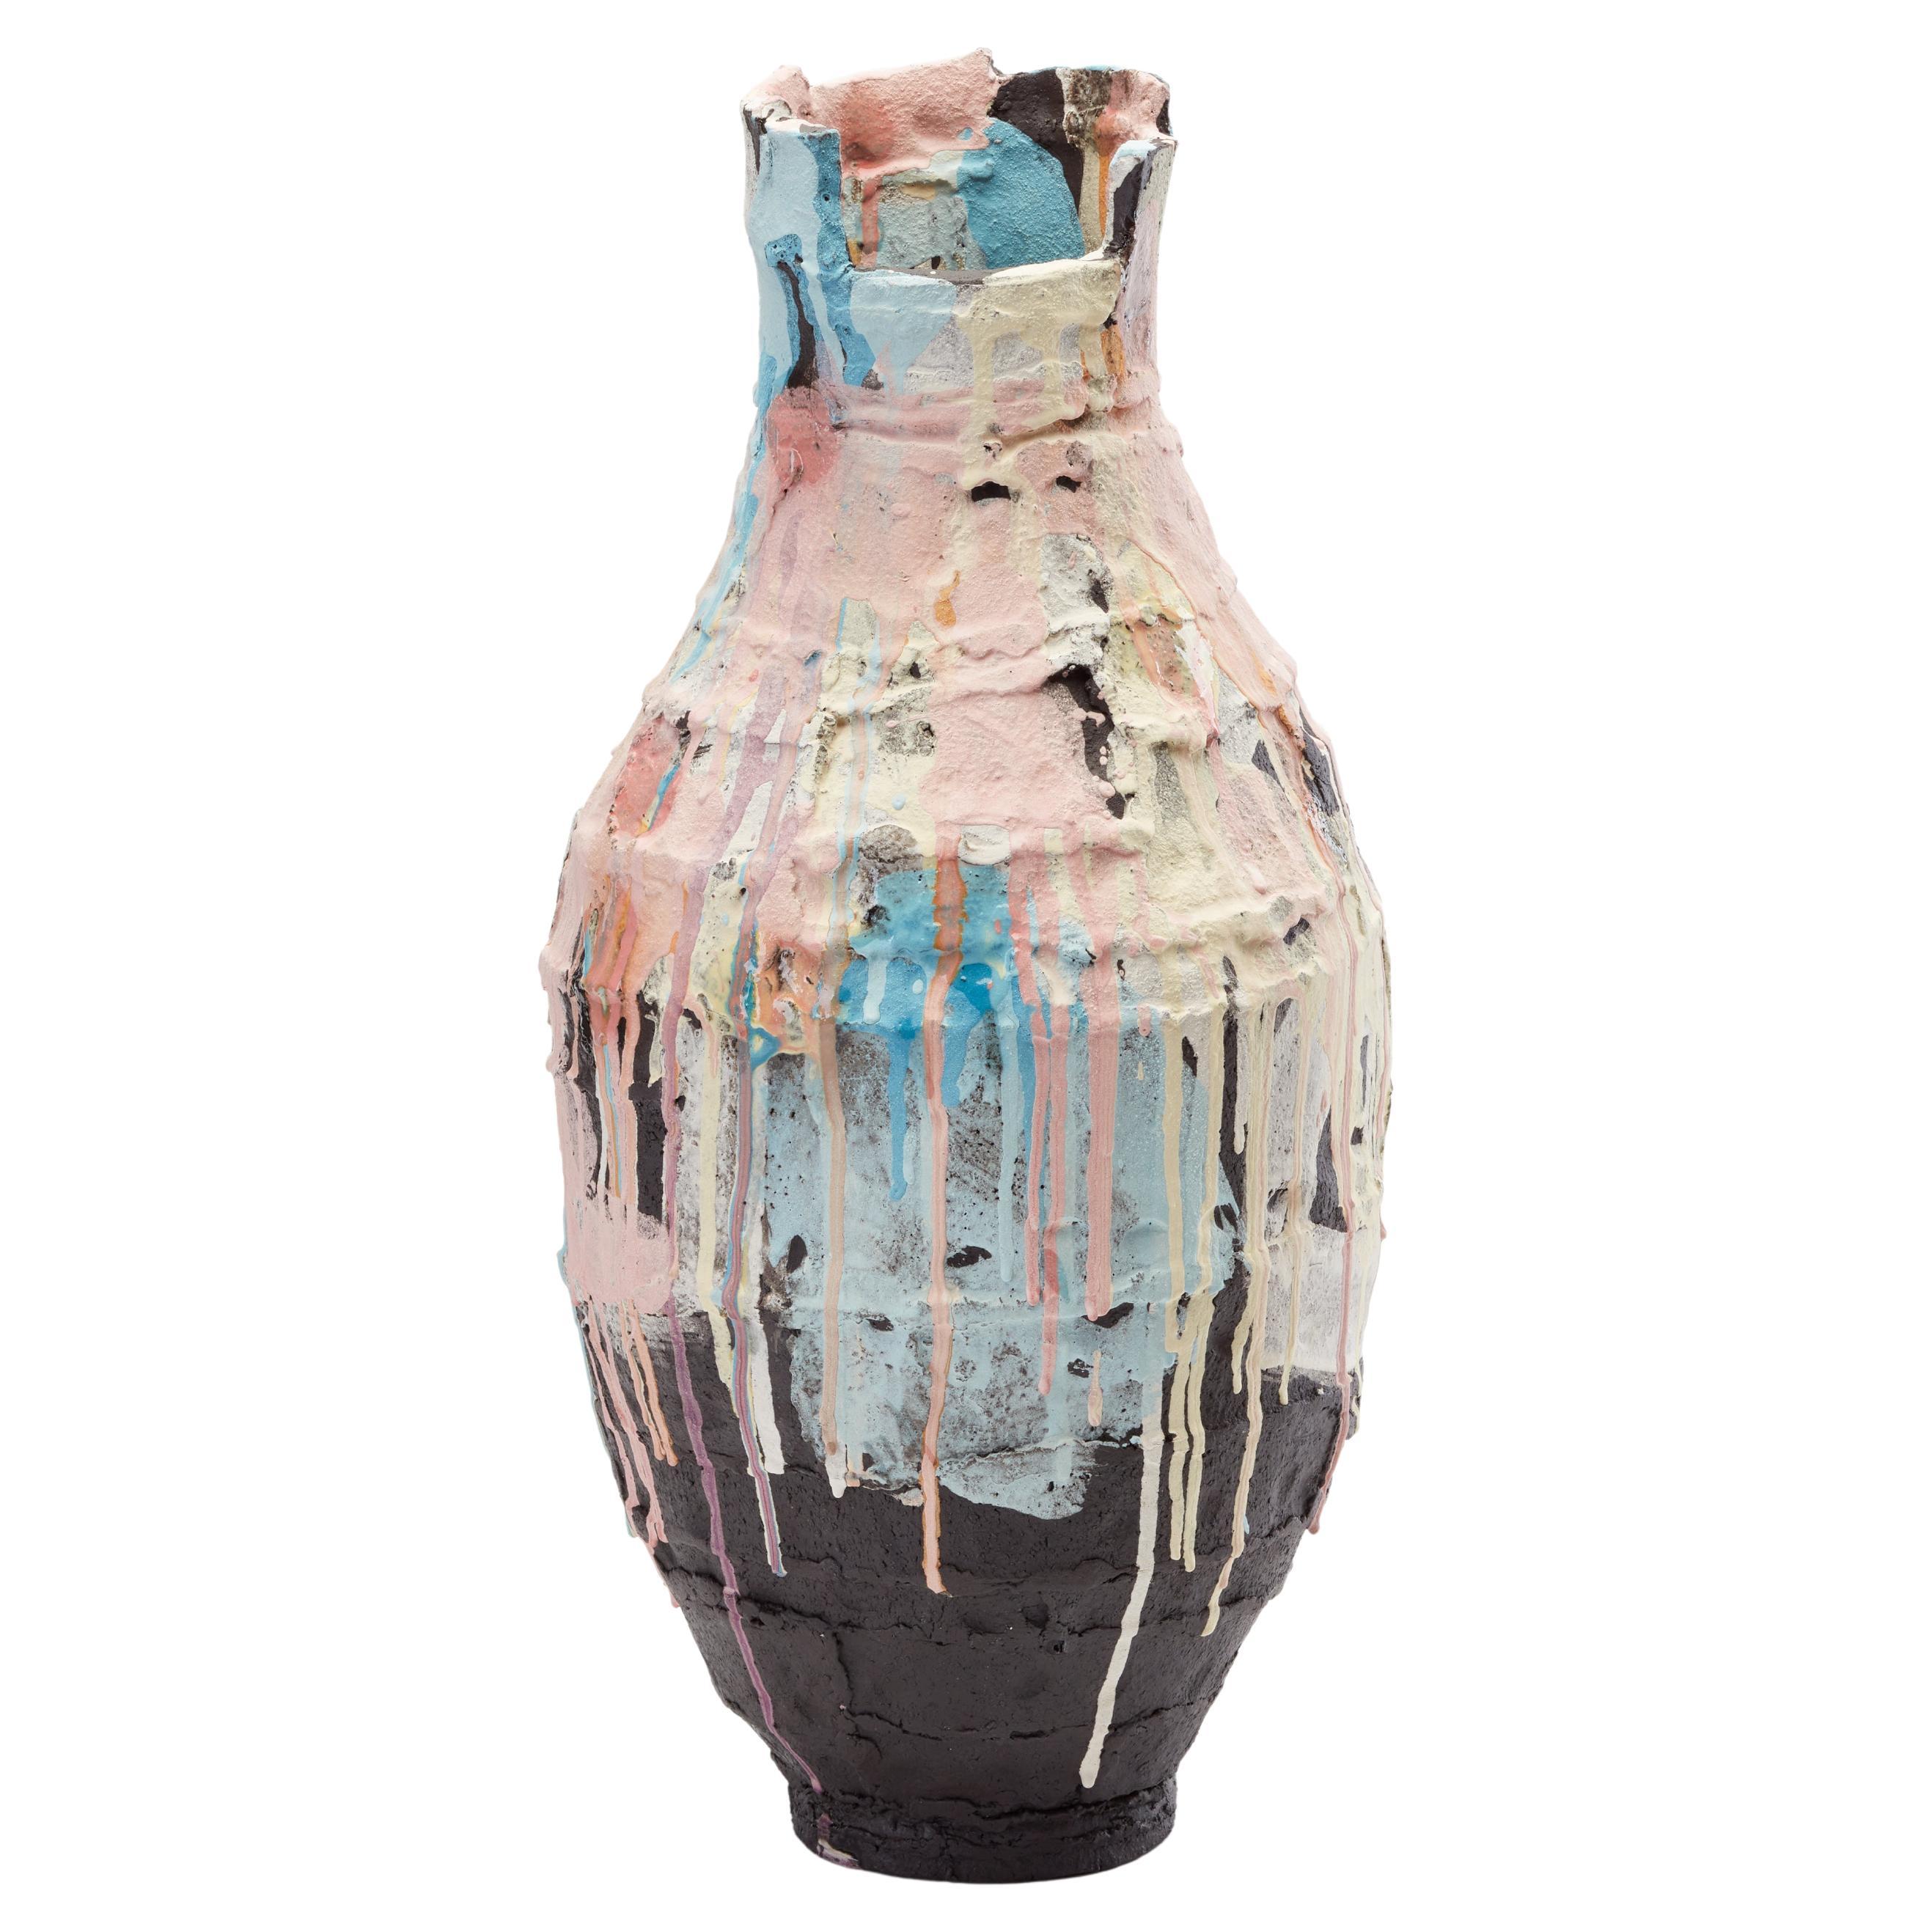 Curruca Vase by Elke Sada